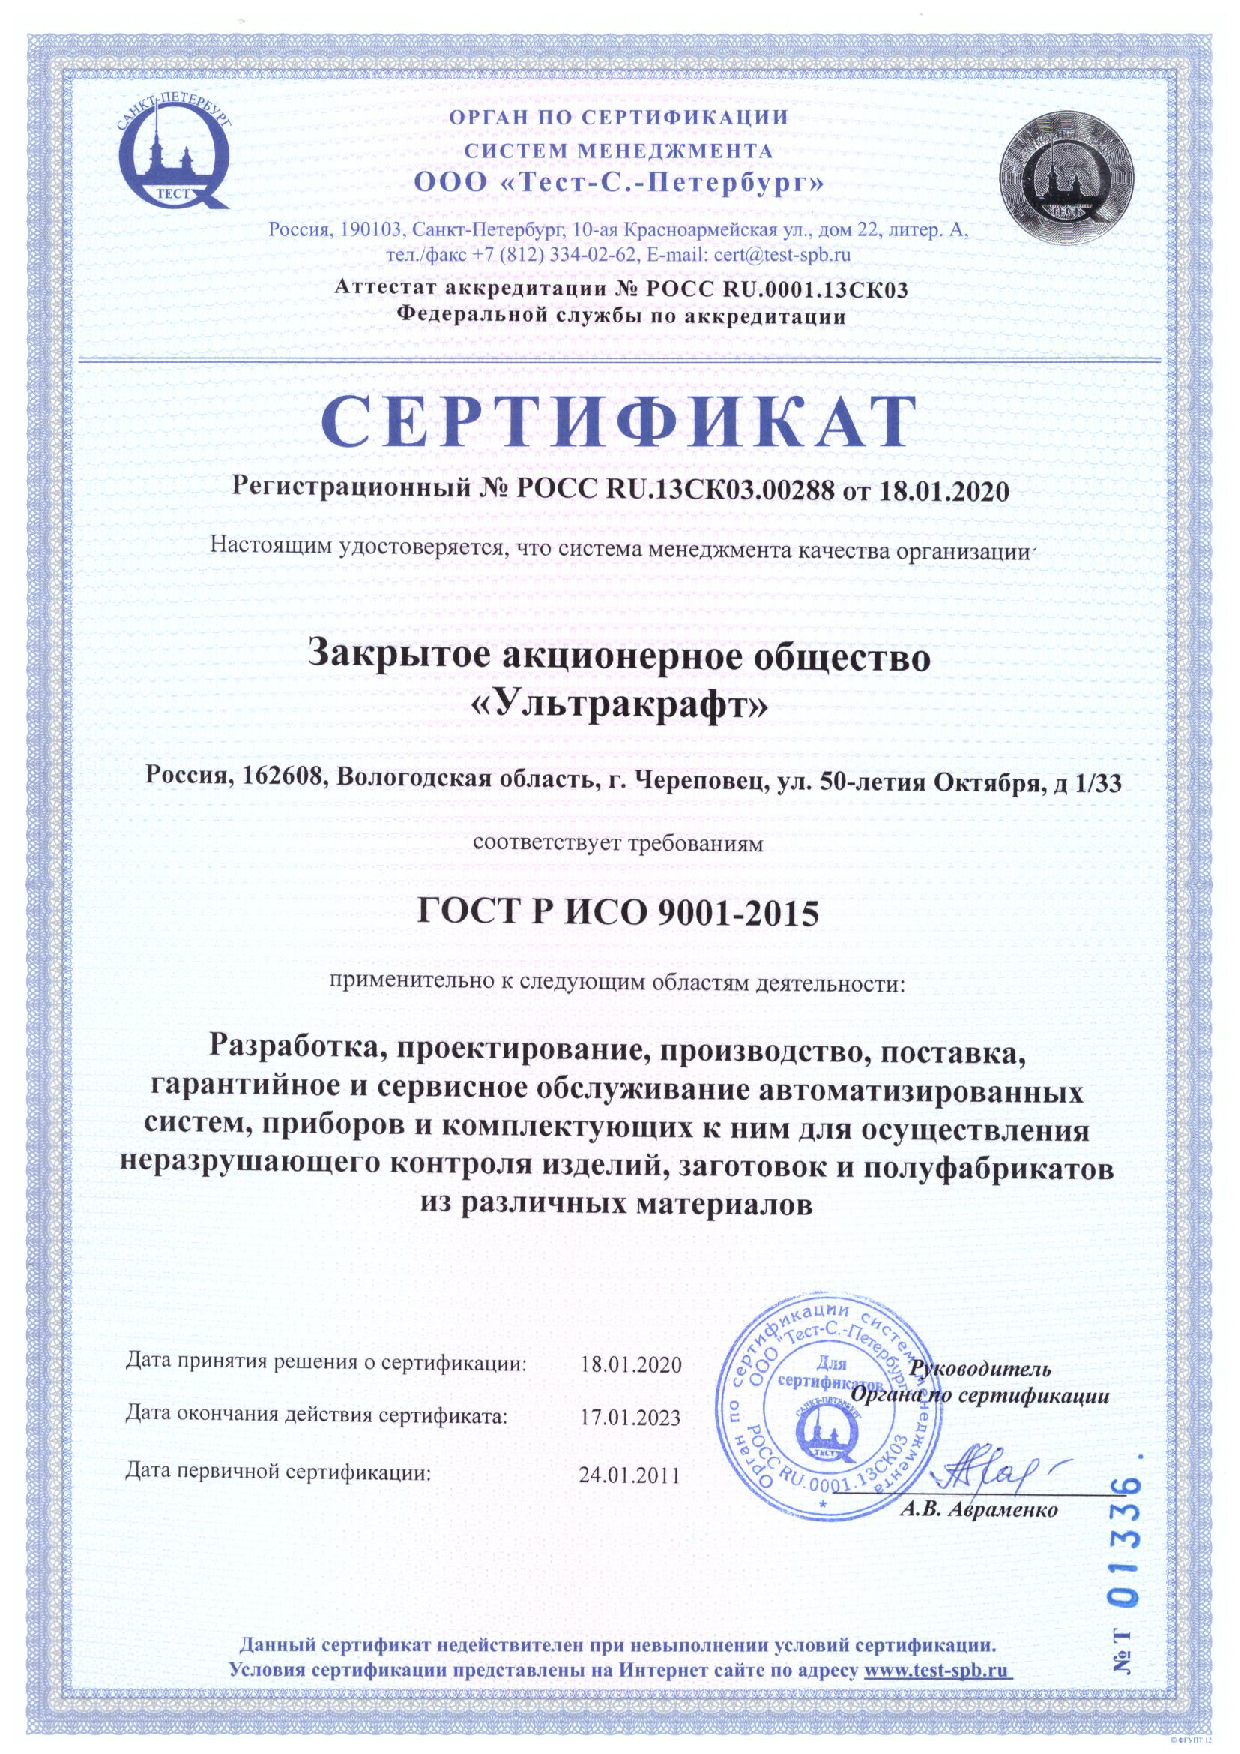 Сертификат_ГОСТ_Р_ИСО_9001_до_17.01.2023_RU.png